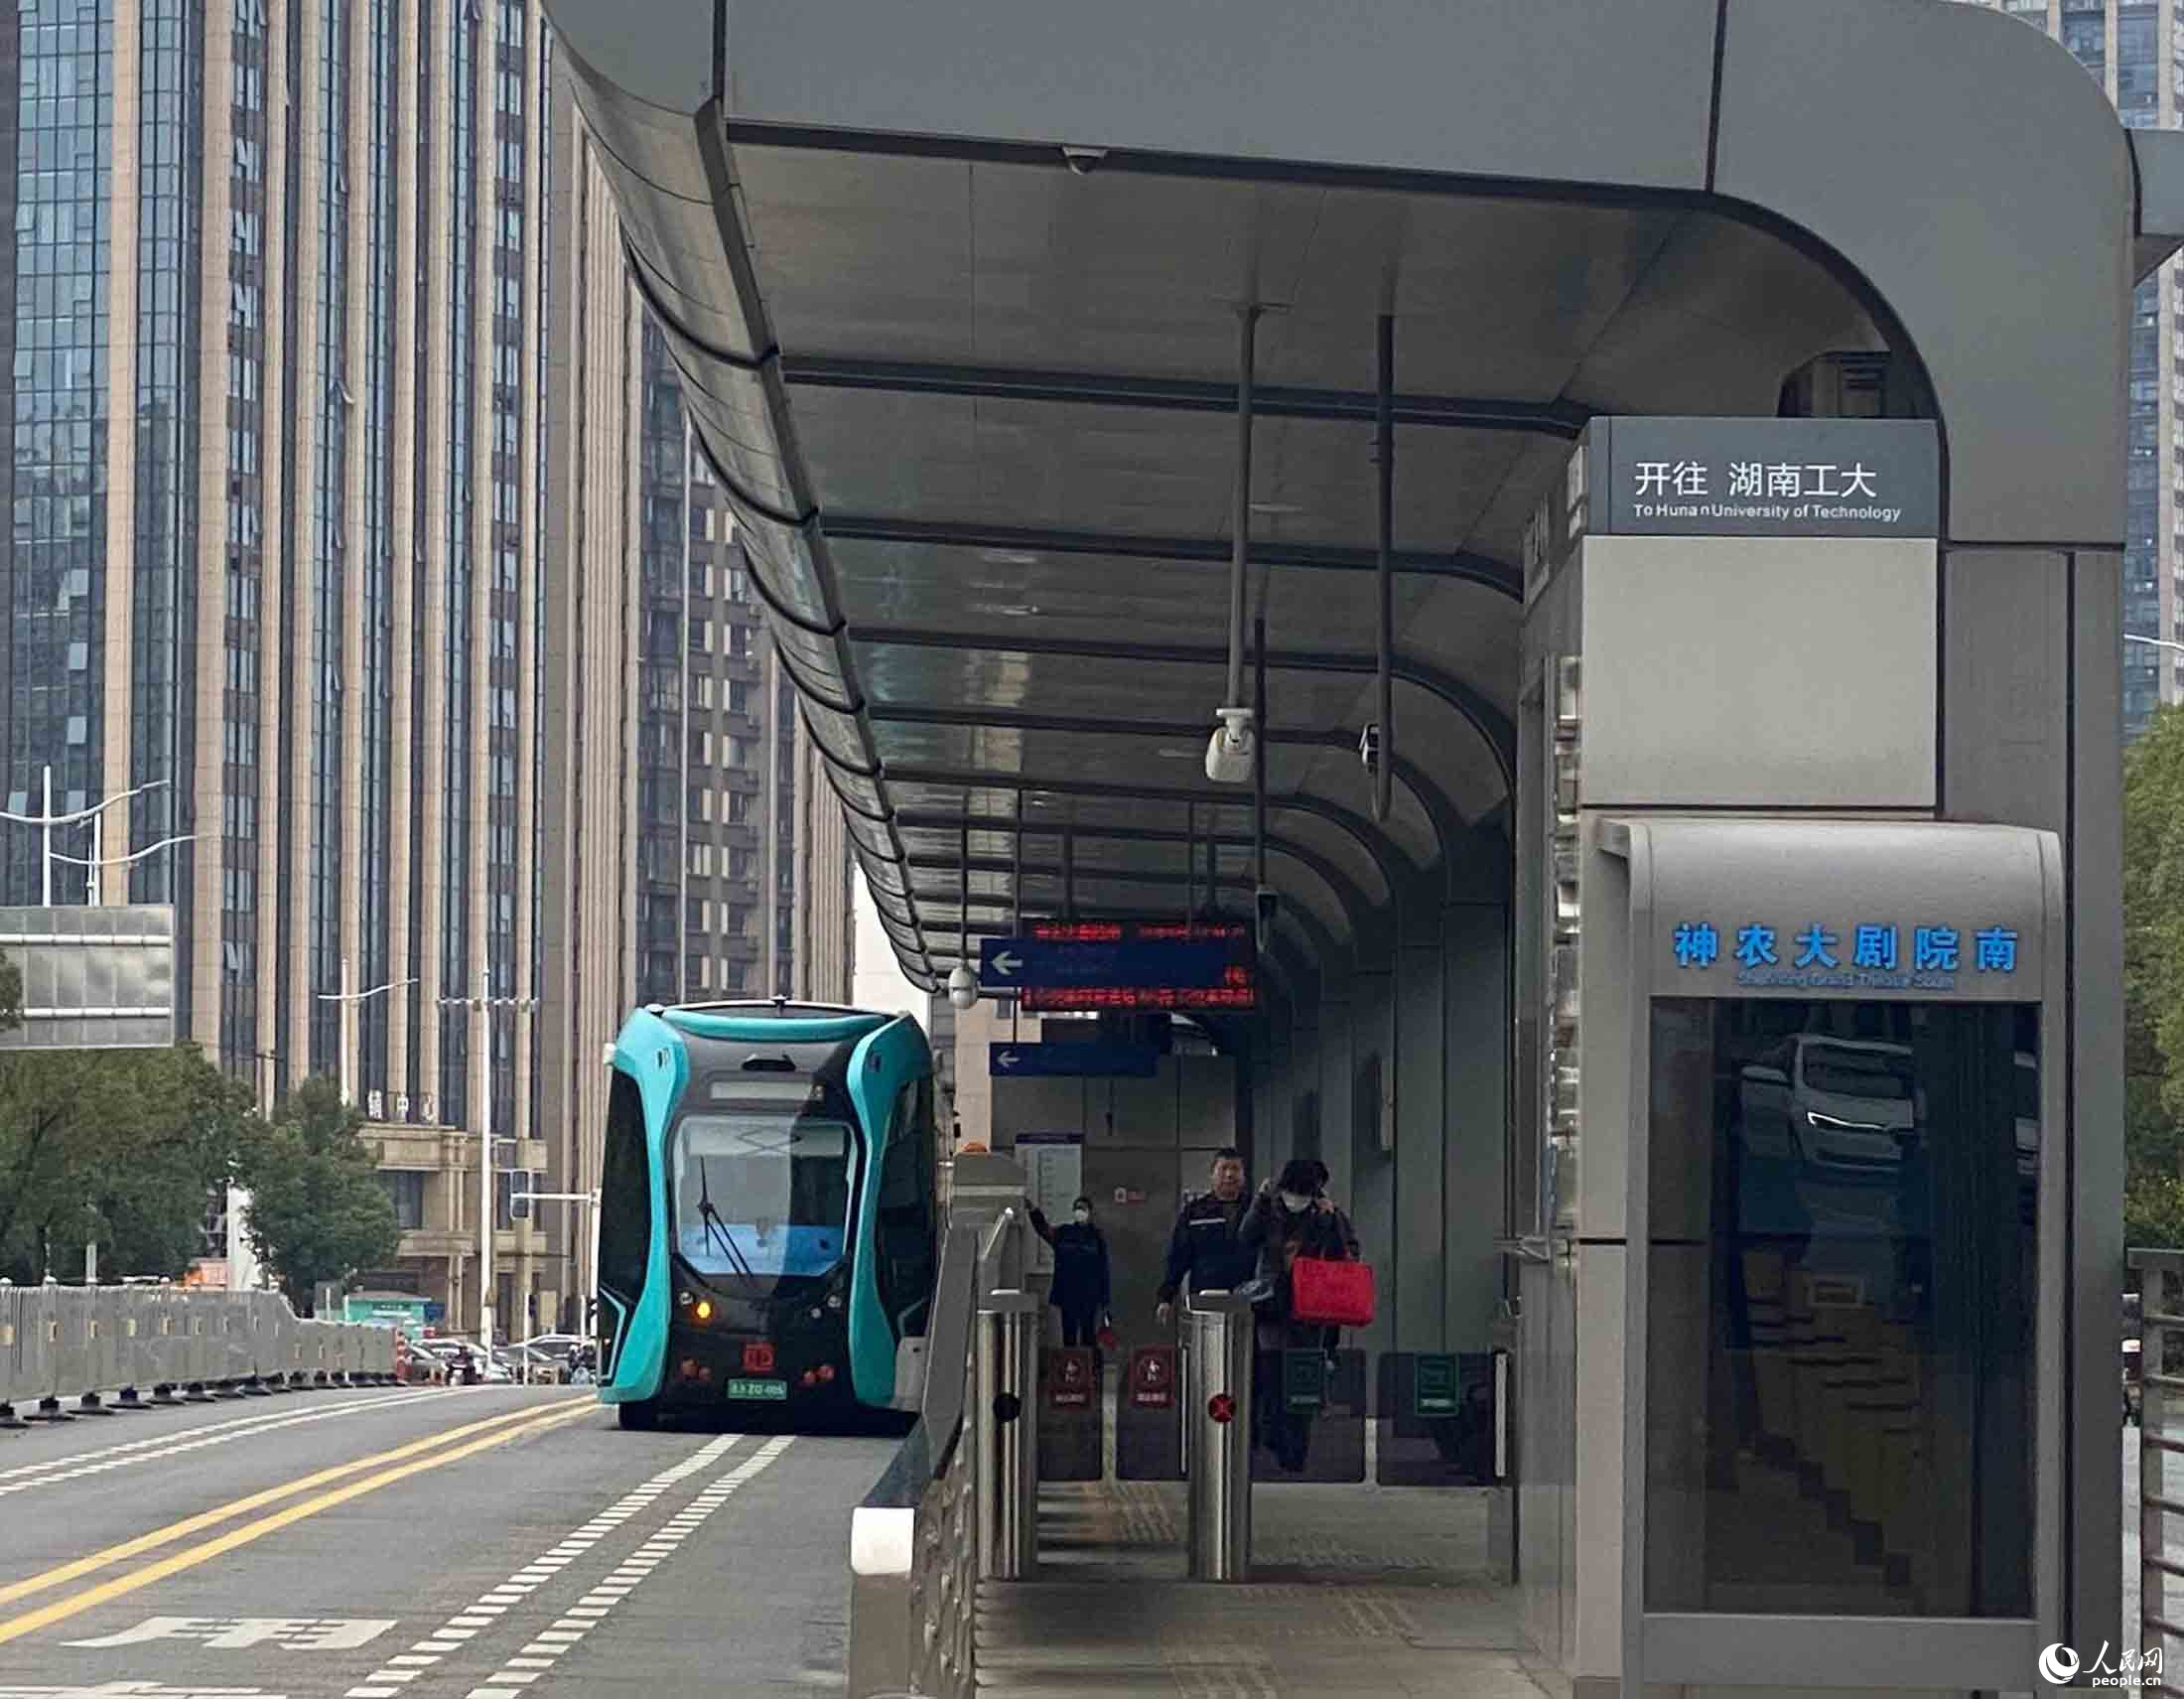 株洲市停靠在站台边的智轨电车。 人民网向宇摄